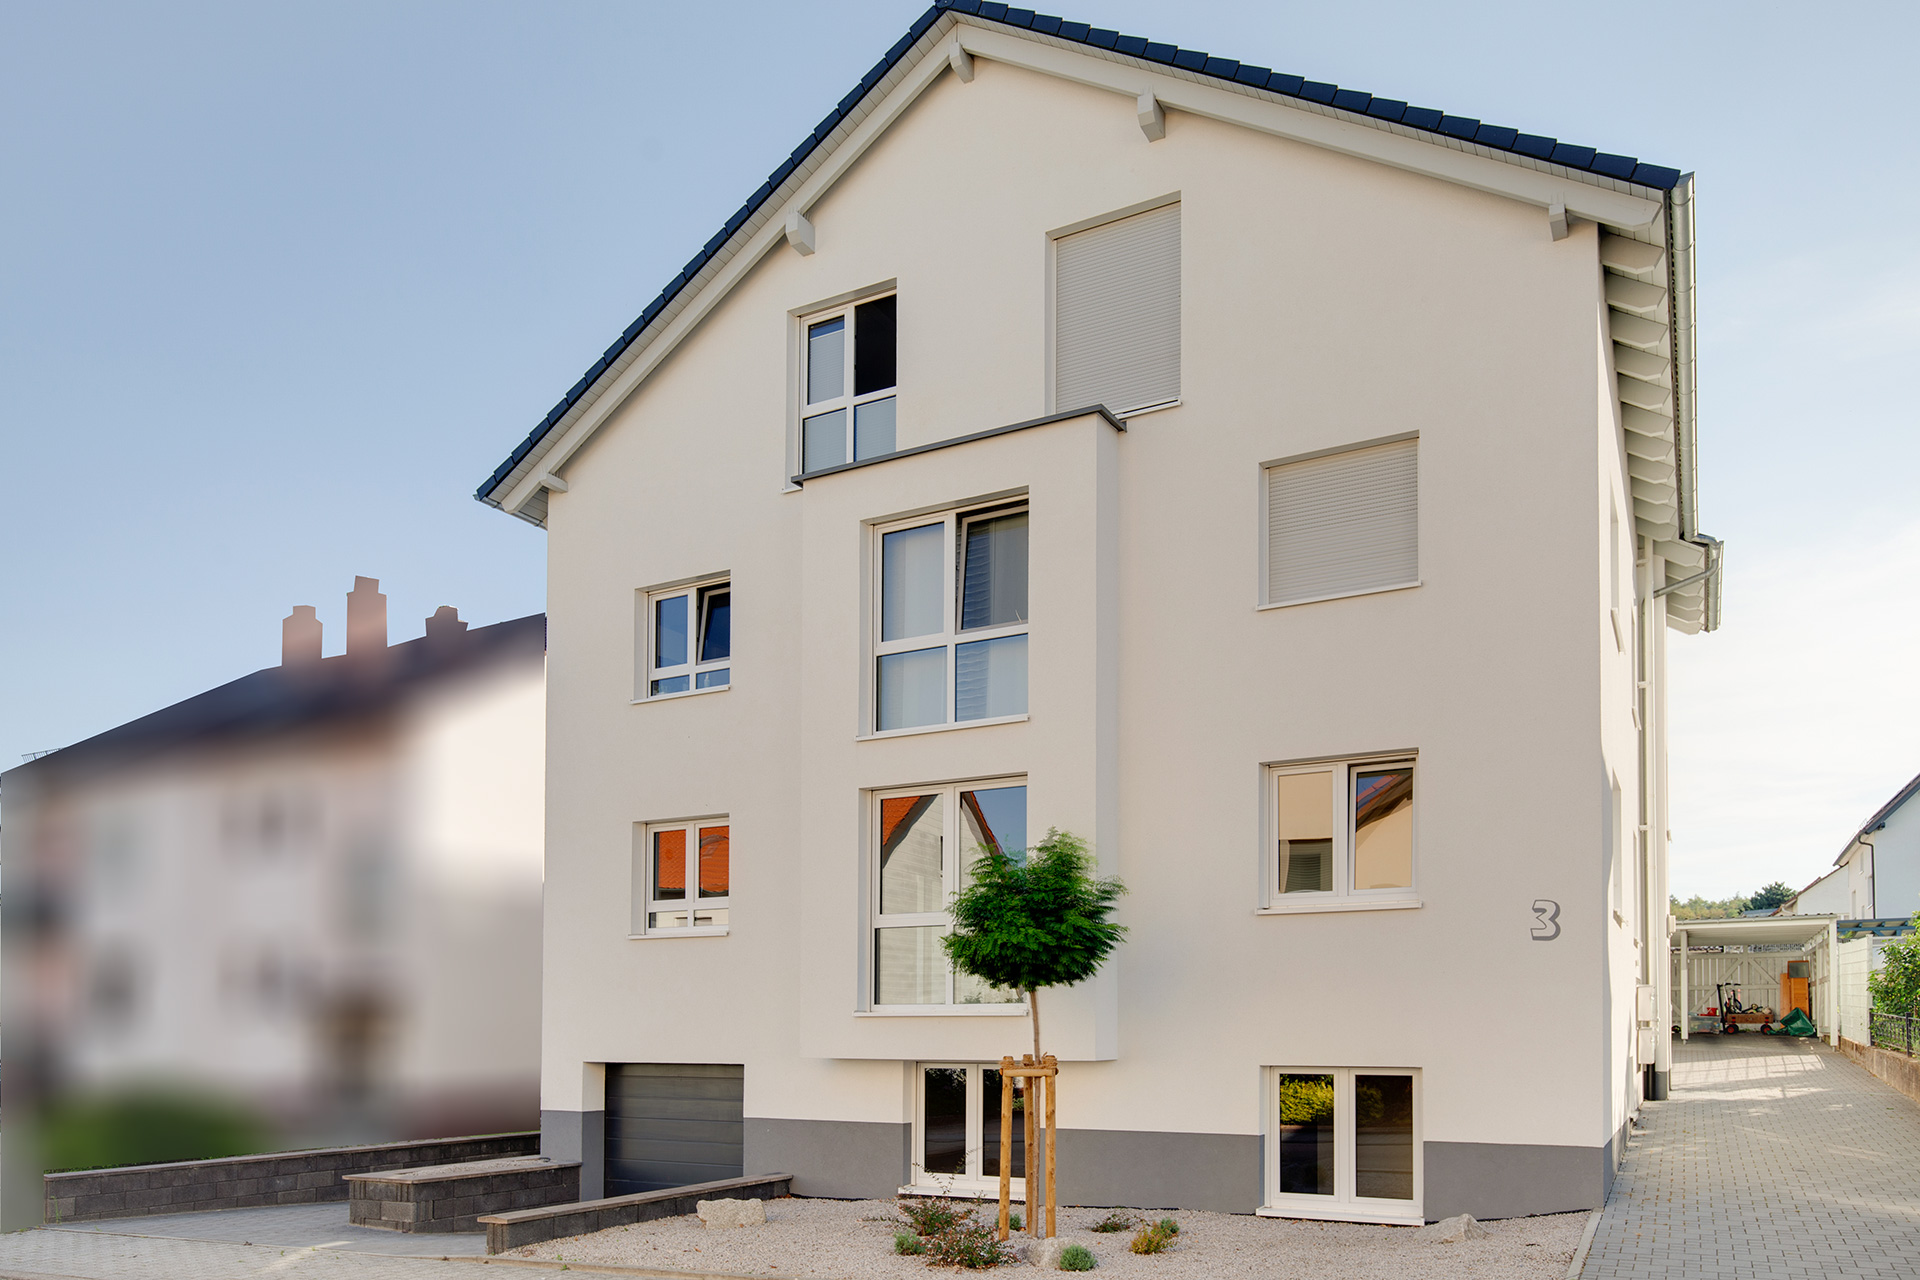 Objekt 114 | Wohnung über 3 Etagen mit Garten und Carport-Stellplatz in Ettlingen-Spessart zu verkaufen